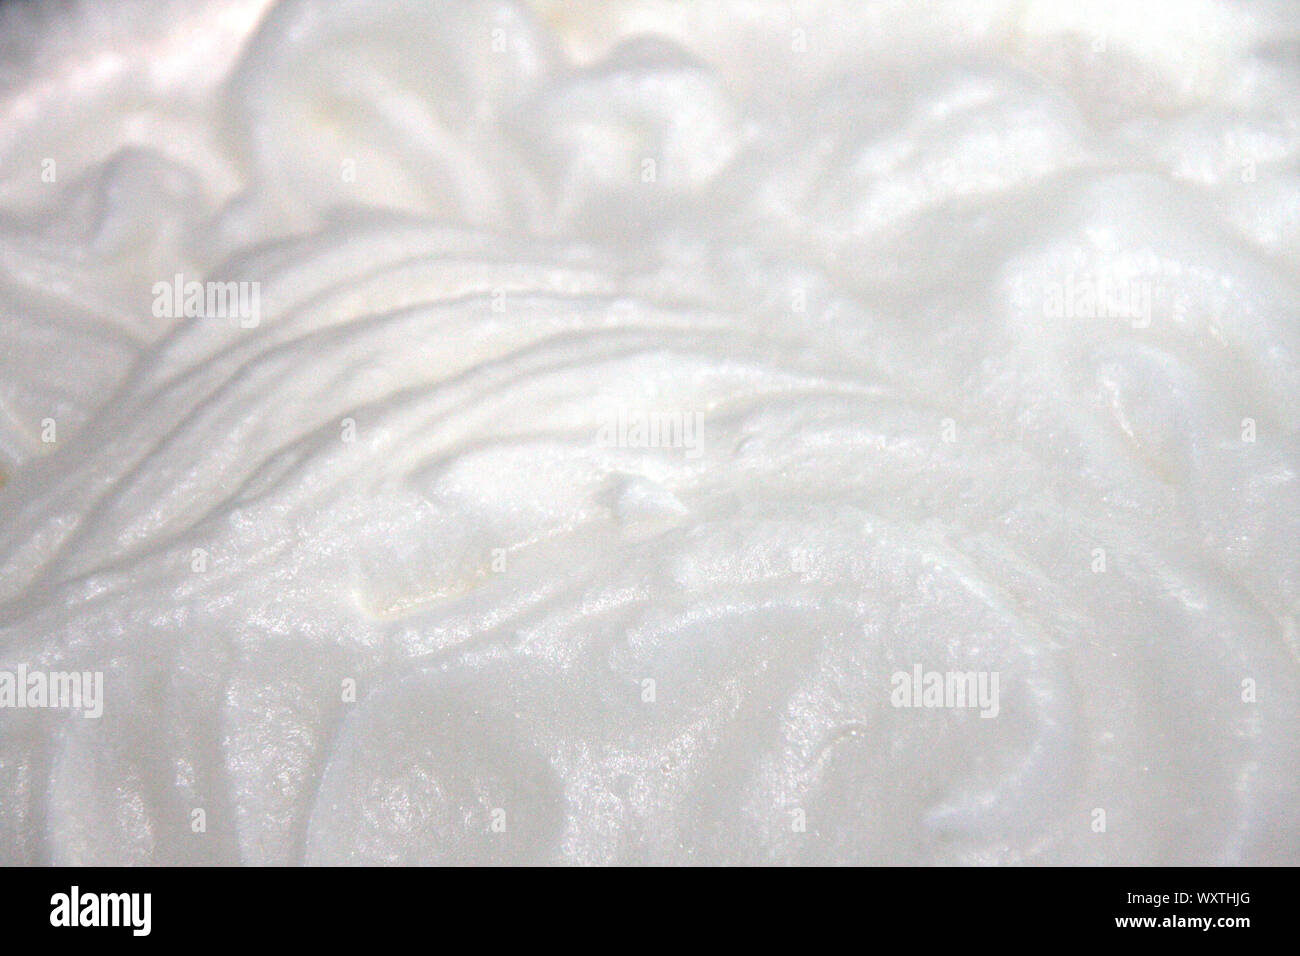 Geschlagener Eischnee und Zucker zum Backen cream Topping close up - Eischnee meringue Hintergrund Makro wallpaper Stockfoto